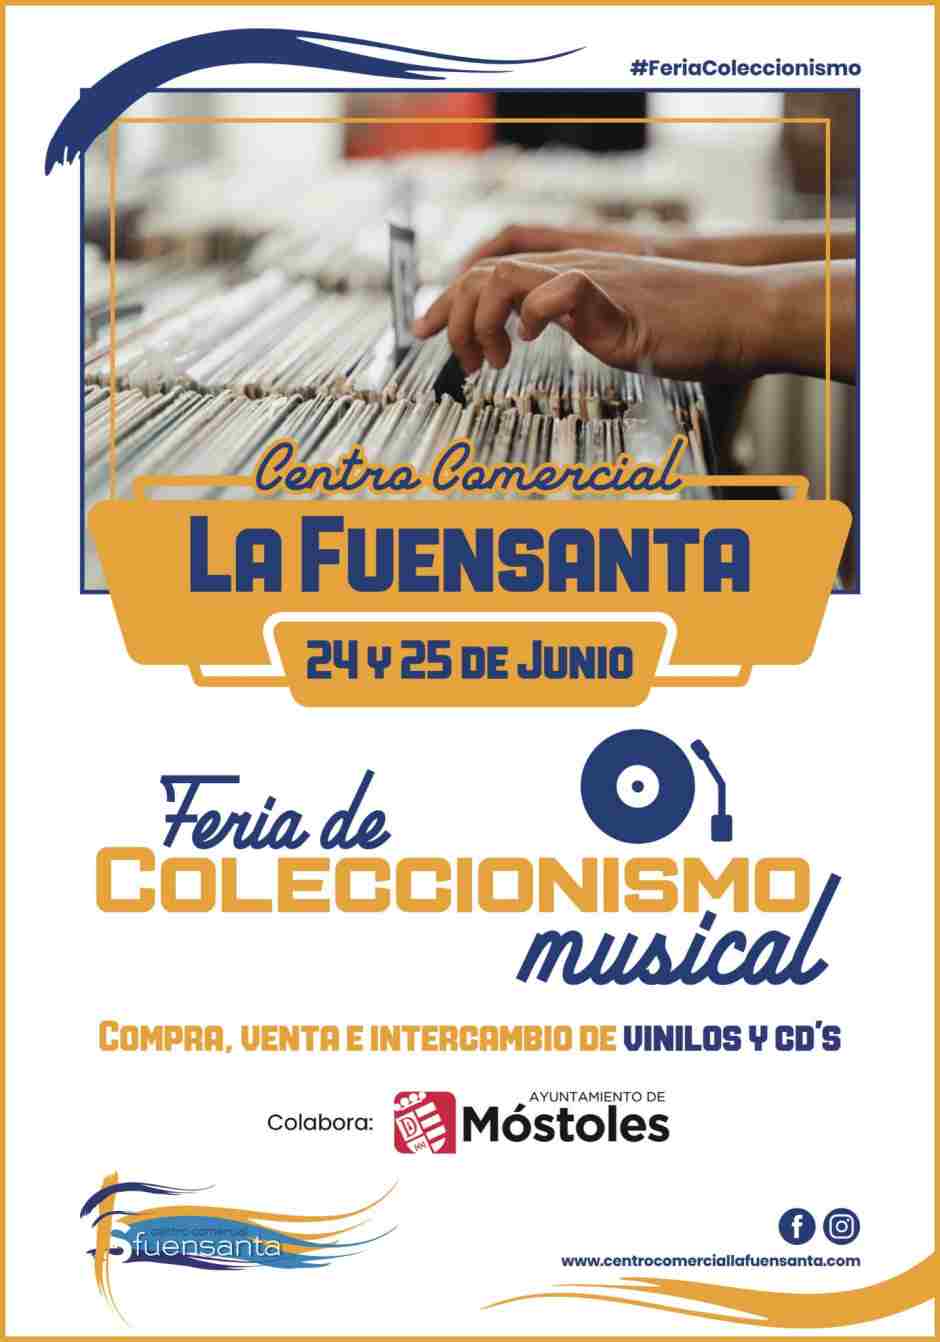 Feria del coleccionismo musical en Móstoles desde el 24 de junio